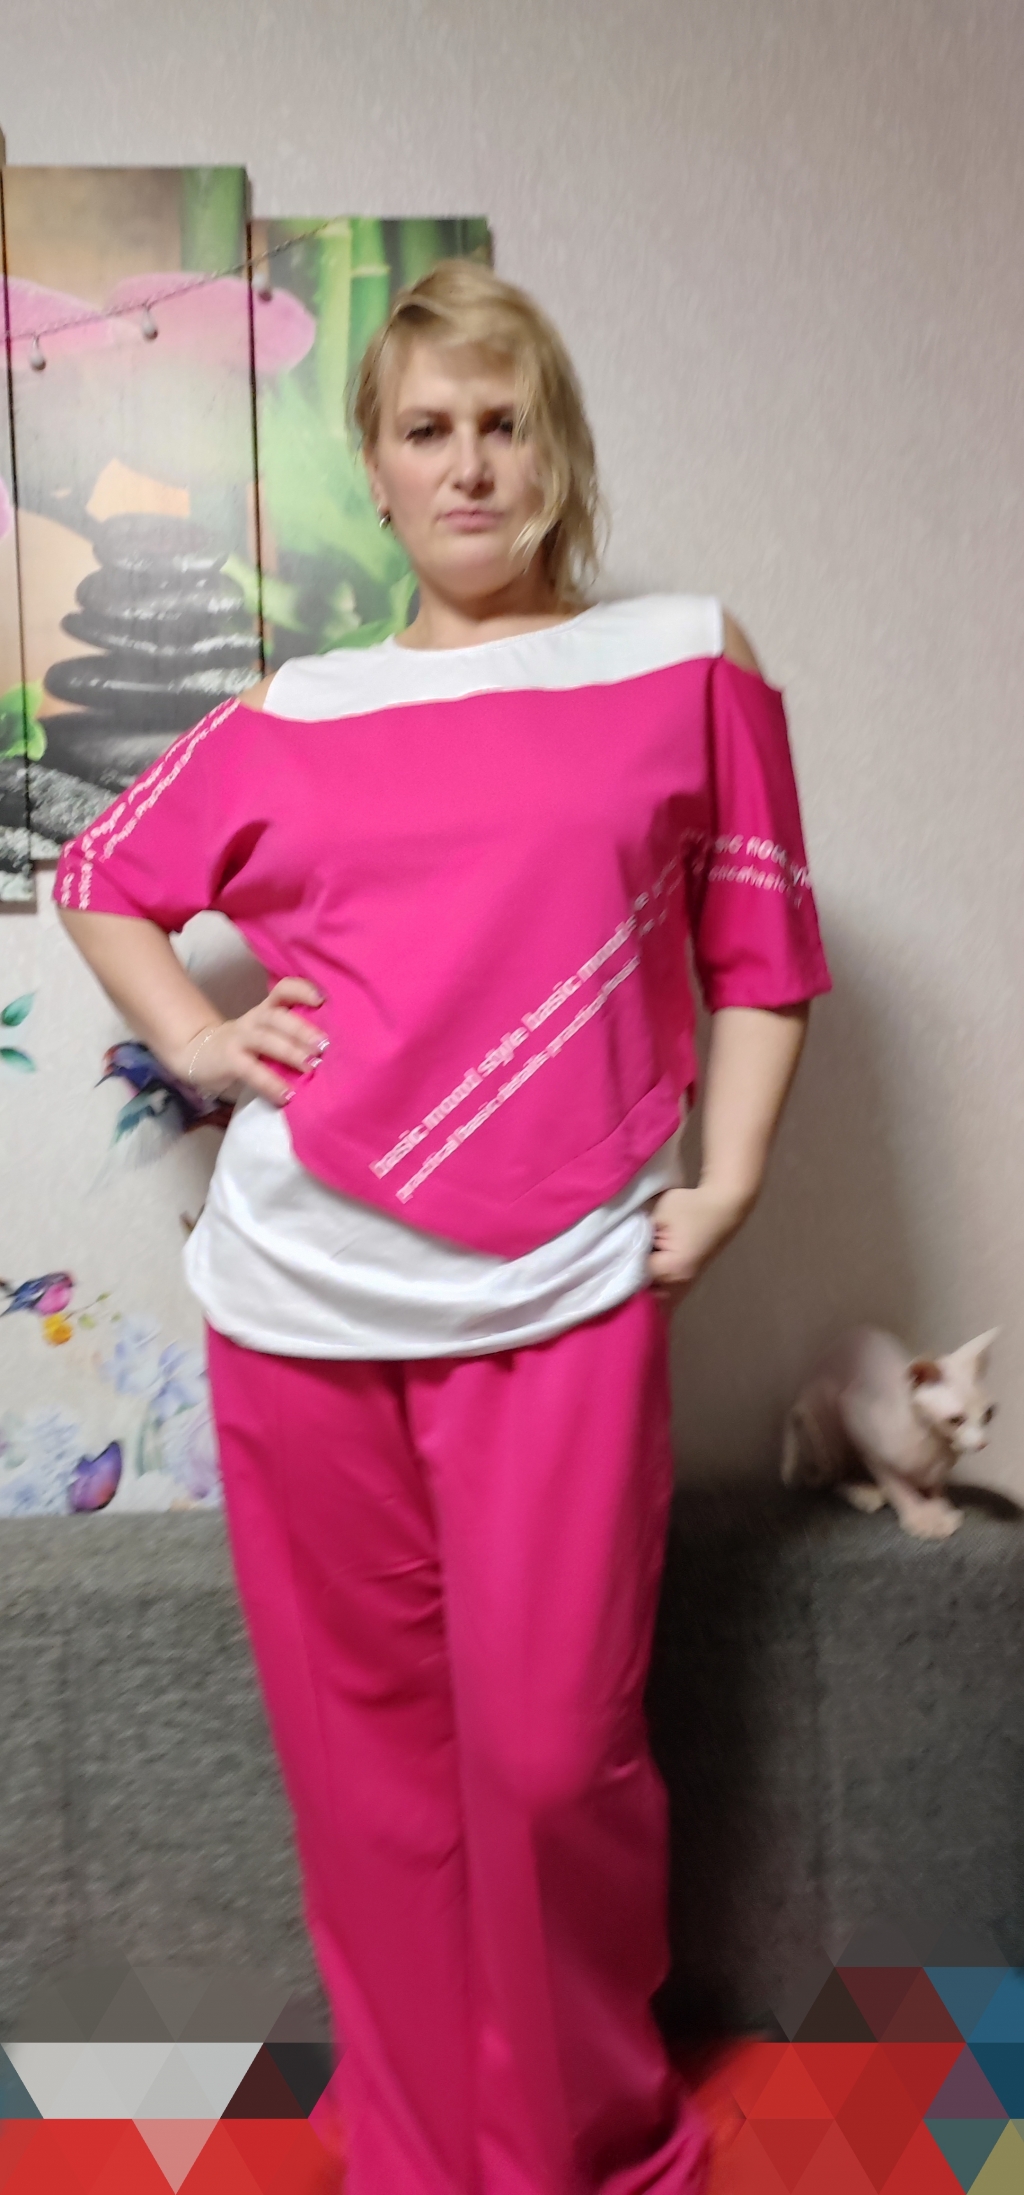 Lady-maria.ru - интернет-магазин женской одежды больших размеров "Мария" - Классное качество